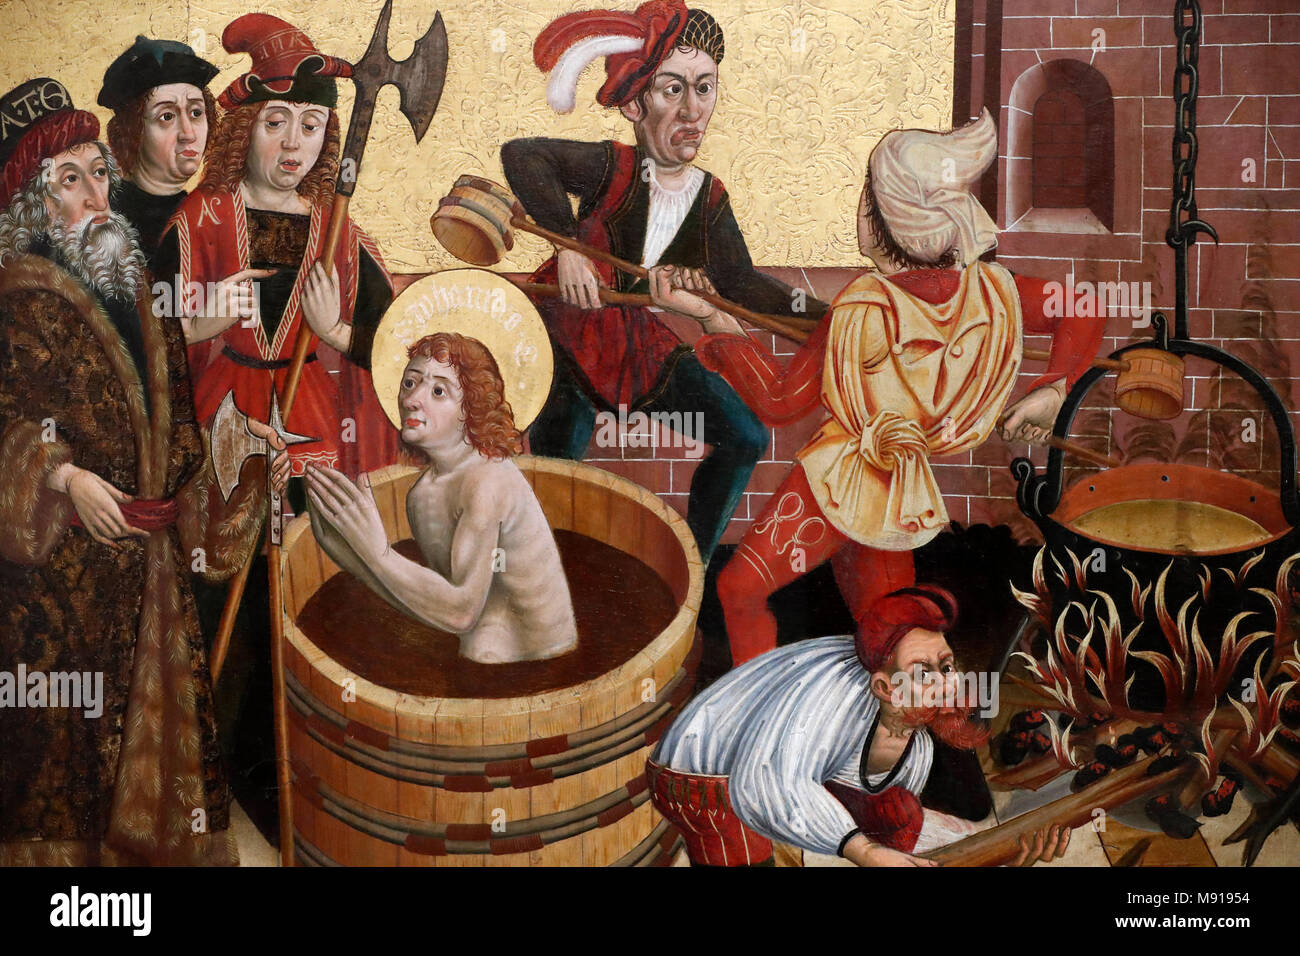 Museo Unterlinden. Martirio de San Juan. Óleo sobre panel de madera. A finales del siglo 15. Colmar. Francia. Foto de stock